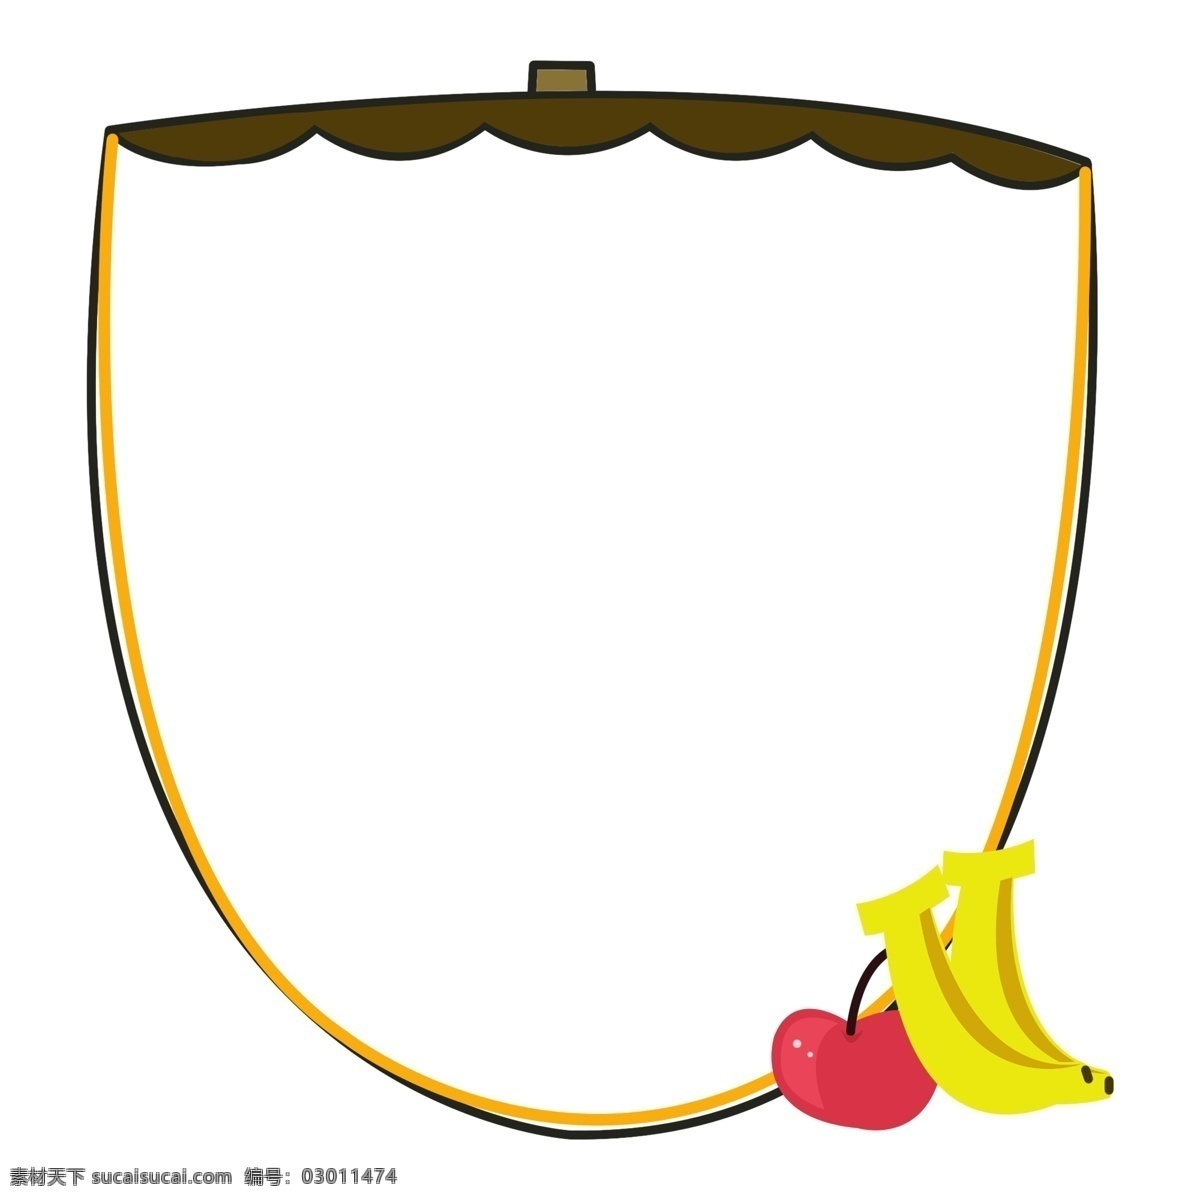 水果 边框 卡通 插画 水果边框插画 香蕉 苹果 黑色的边框 黄色线条装饰 卡通边框插画 创意边框